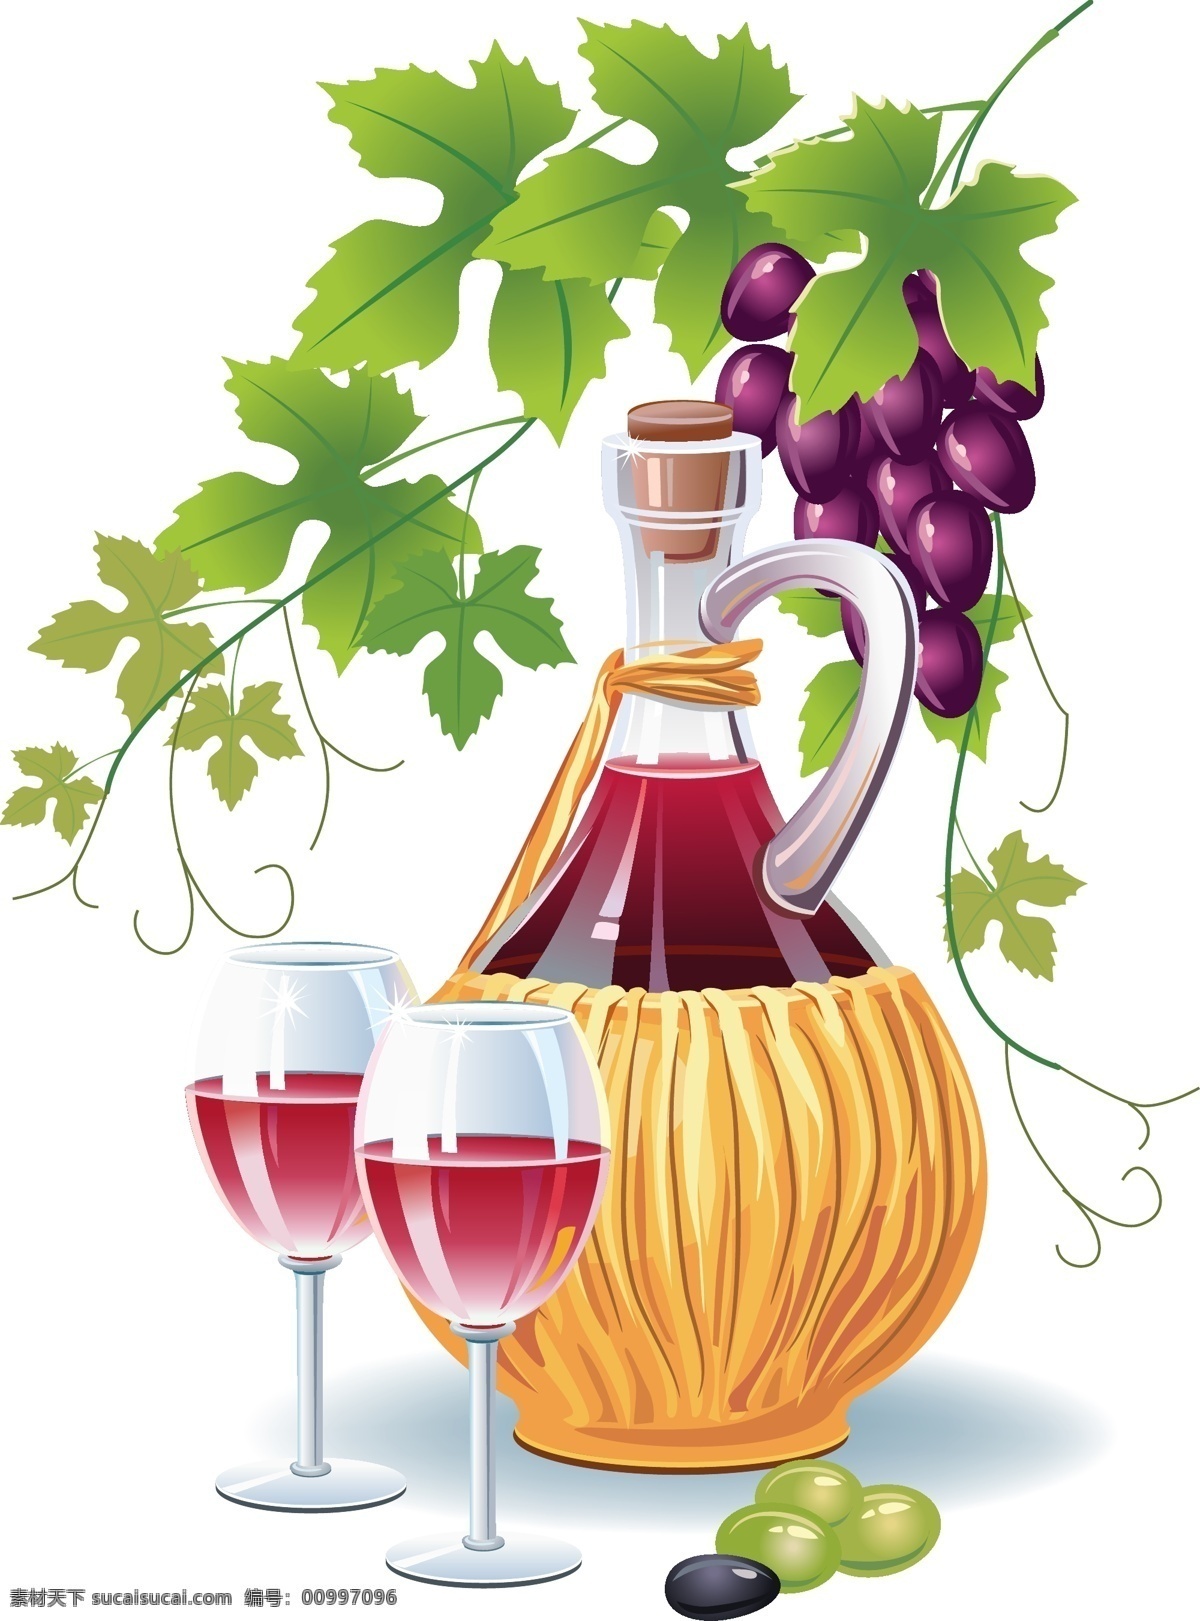 矢量 橄榄 酒 插图 绘画 酒杯 瓶子 色彩 水果 叶子 植物 矢量图 其他矢量图